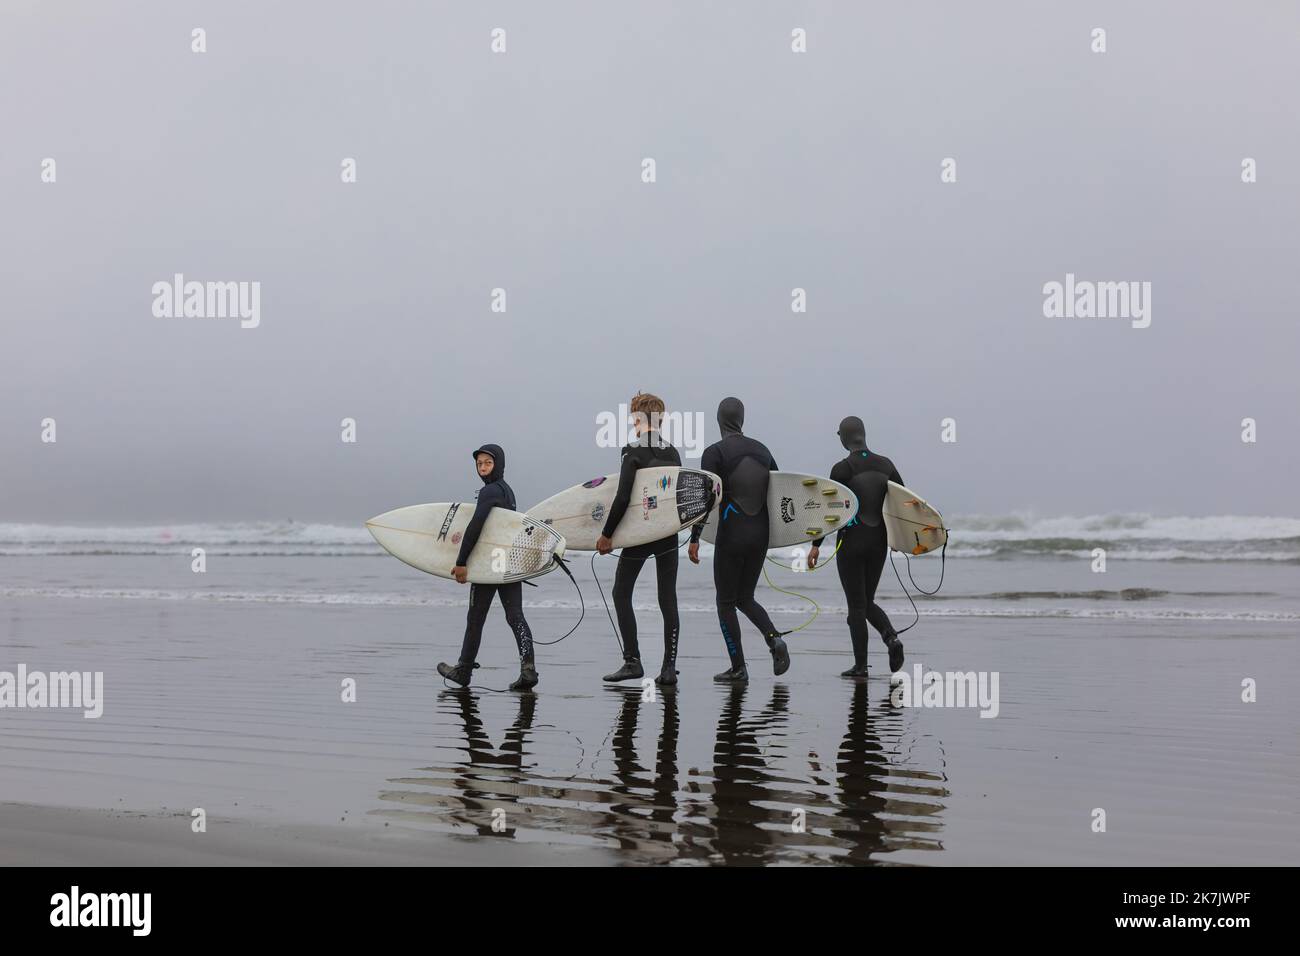 Gruppo di surfisti che trasportano le loro tavole da surf all'alba nebbiosa. Surfisti in mute alla spiaggia di Tofino Canada. Foto di viaggio, messa a fuoco selettiva, copyspa Foto Stock